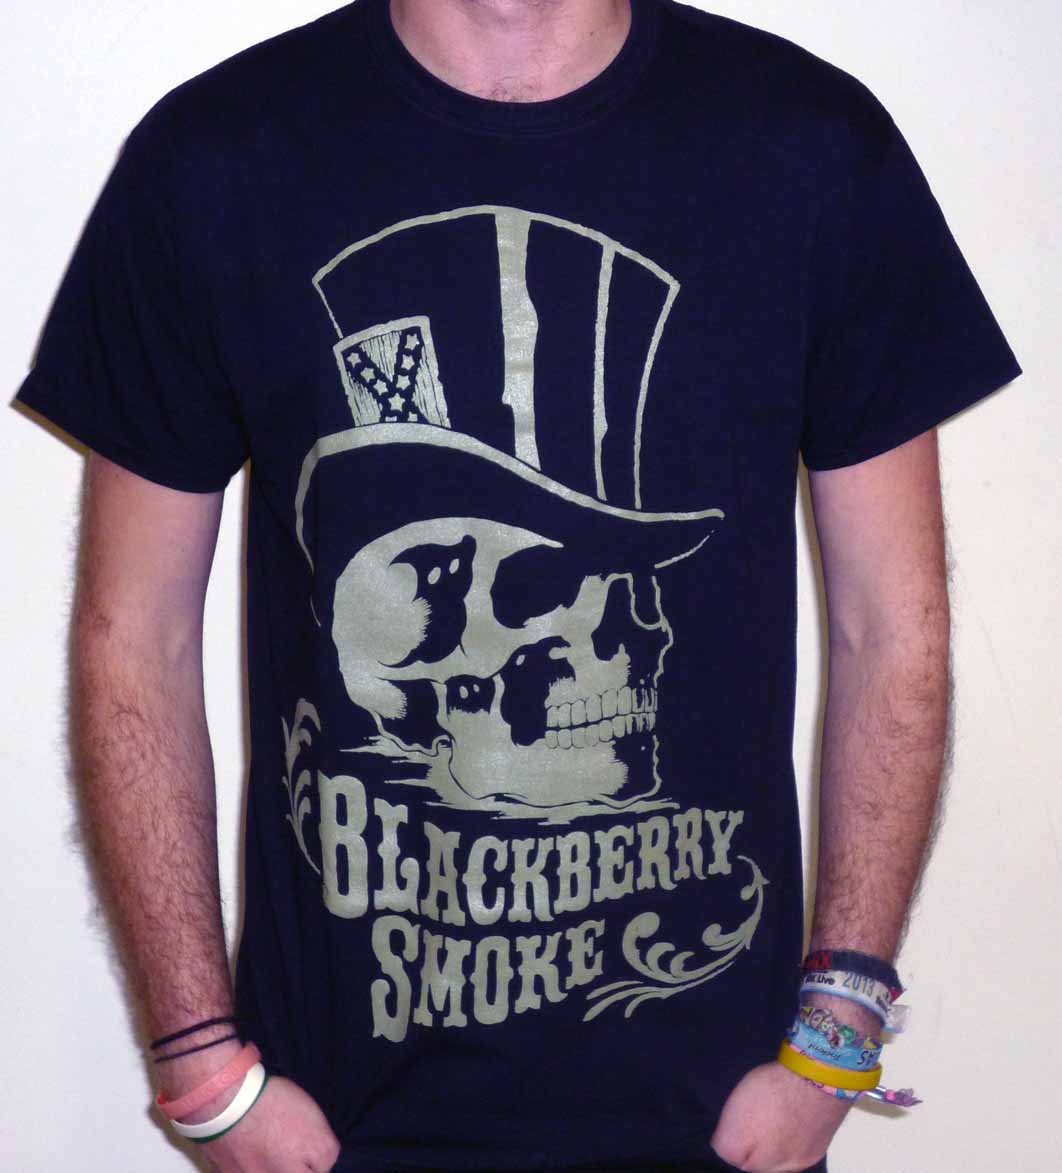 Blackberry Smoke "Skull & Tophat" T-shirt